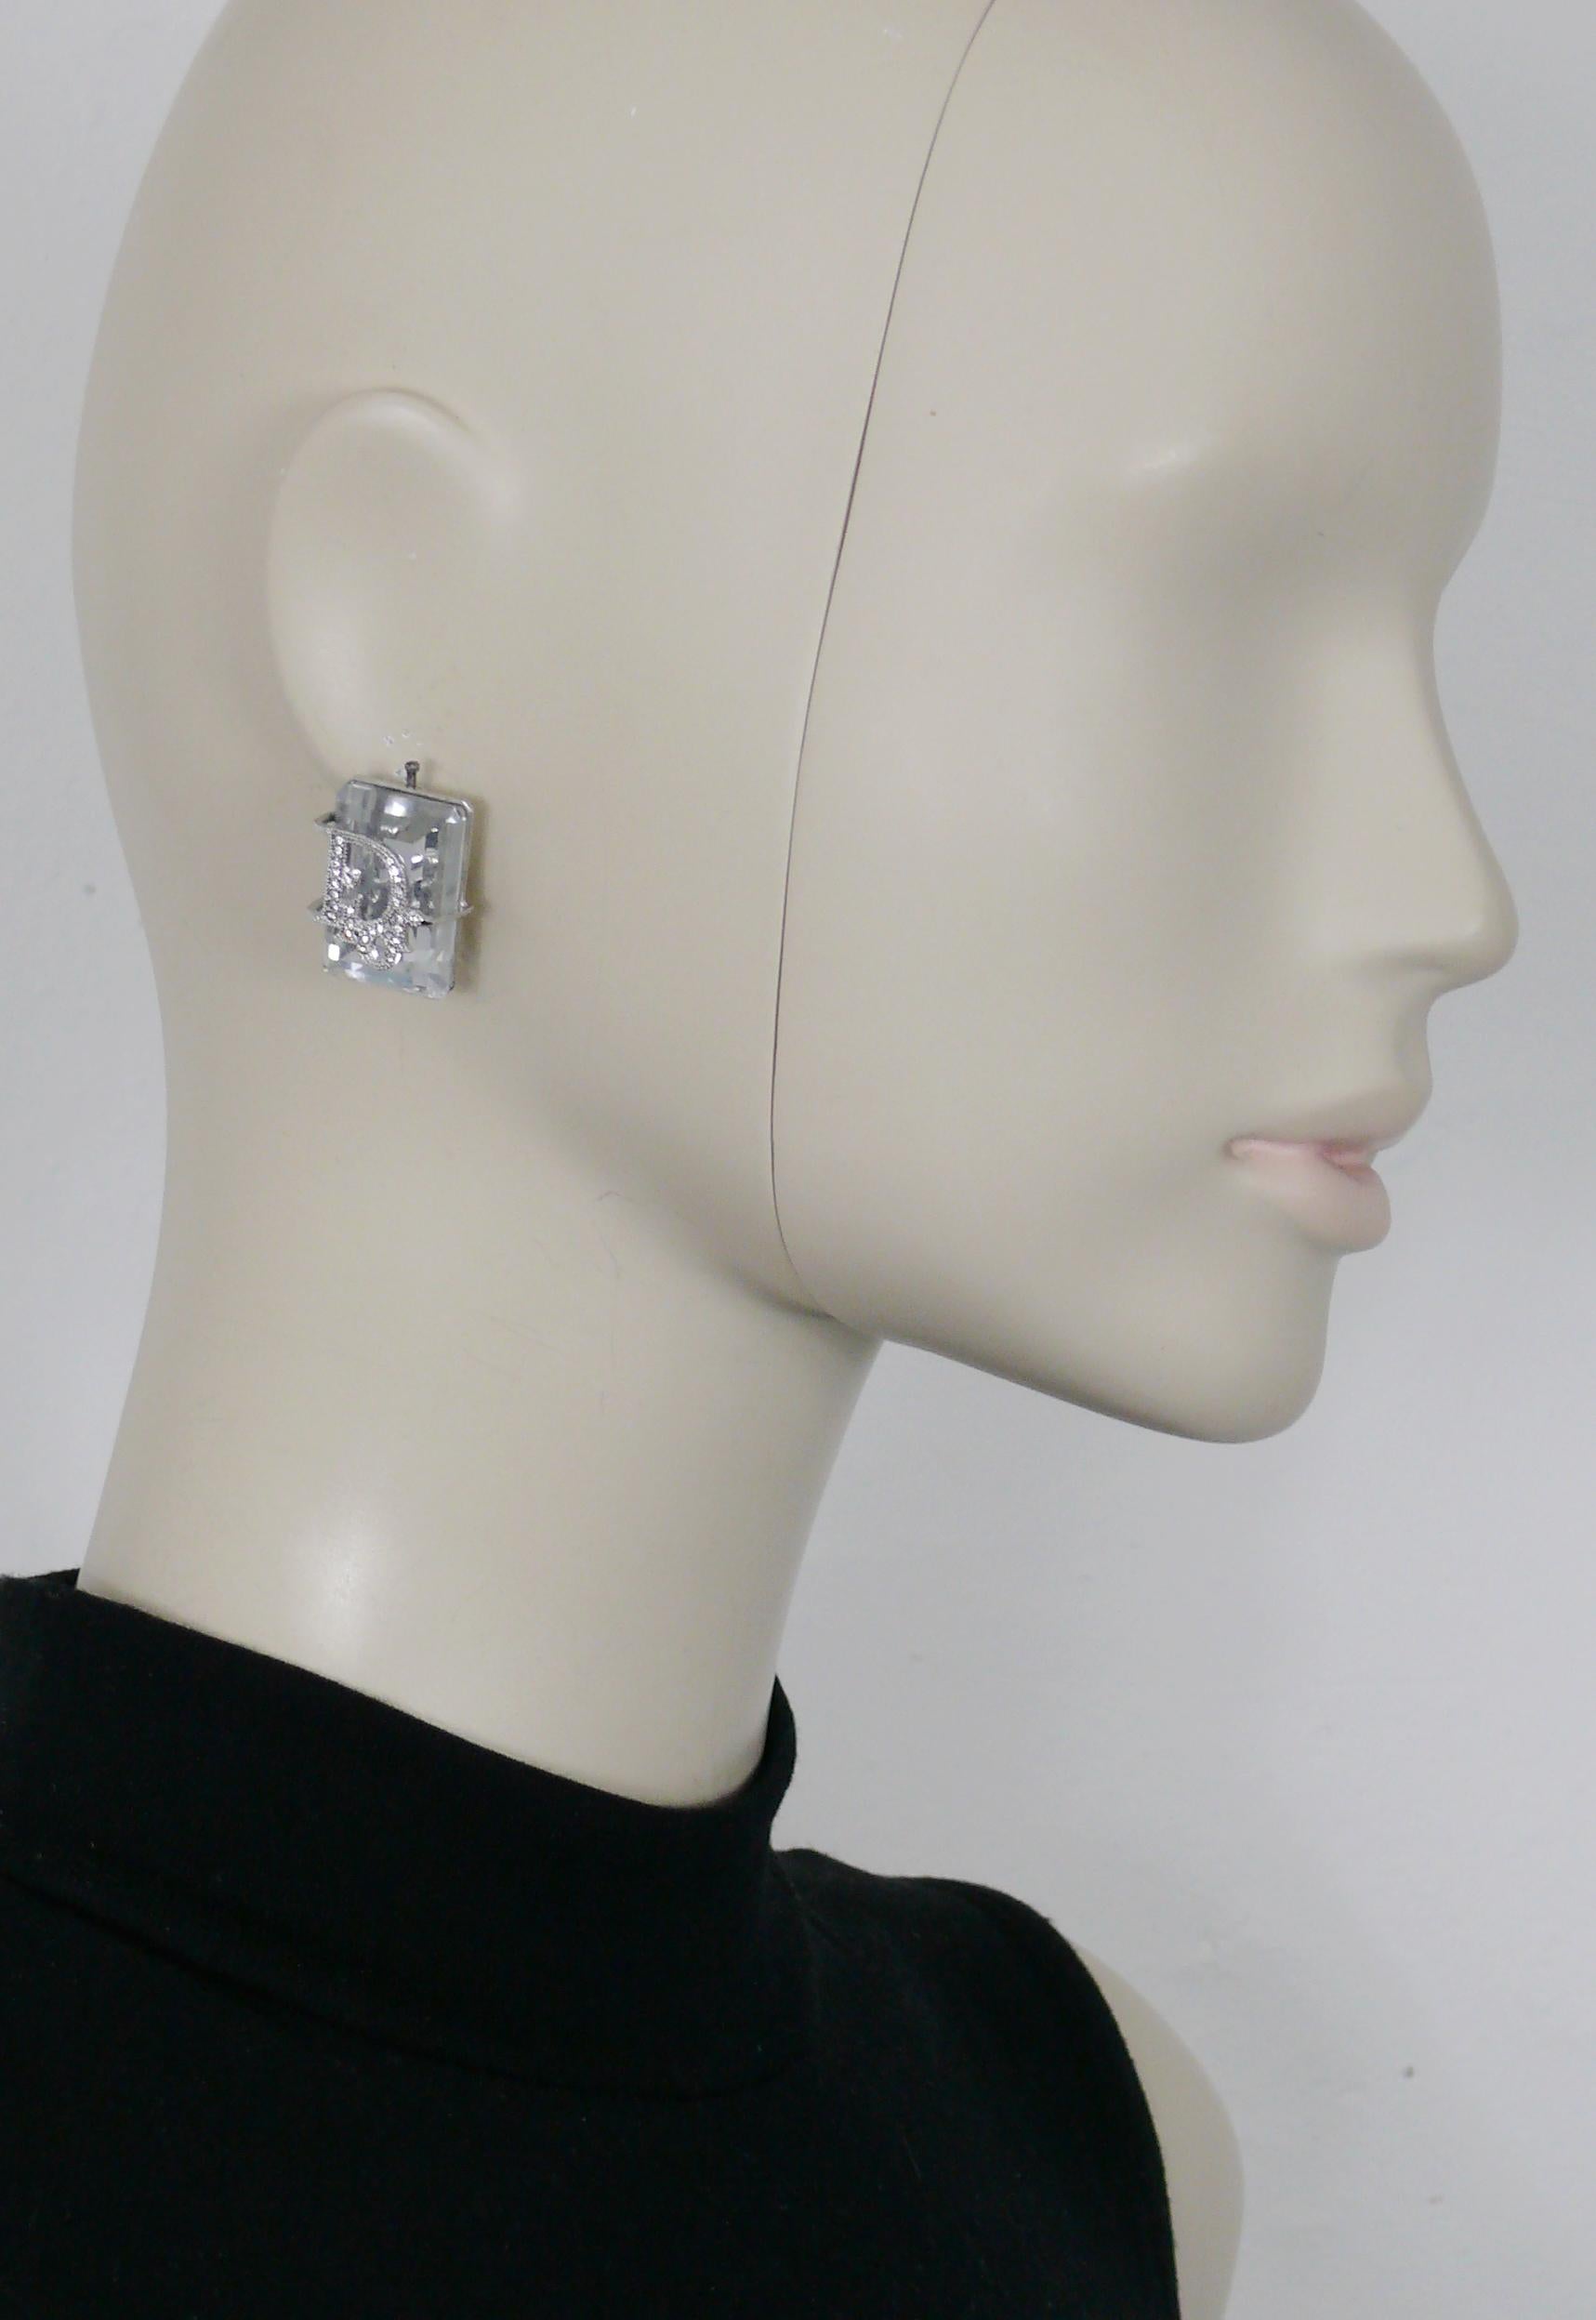 CHRISTIAN DIOR Ohrringe im Vintage-Stil mit einem massiven, rechteckigen, klaren Kristall, der in ein mit Juwelen besetztes DIOR-Logo eingefasst ist.

Silberfarbene Metallbeschläge.

Geprägte DIOR.

Ungefähre Maße: ca. 2,5 cm x 1,7 cm (0,98 Zoll x